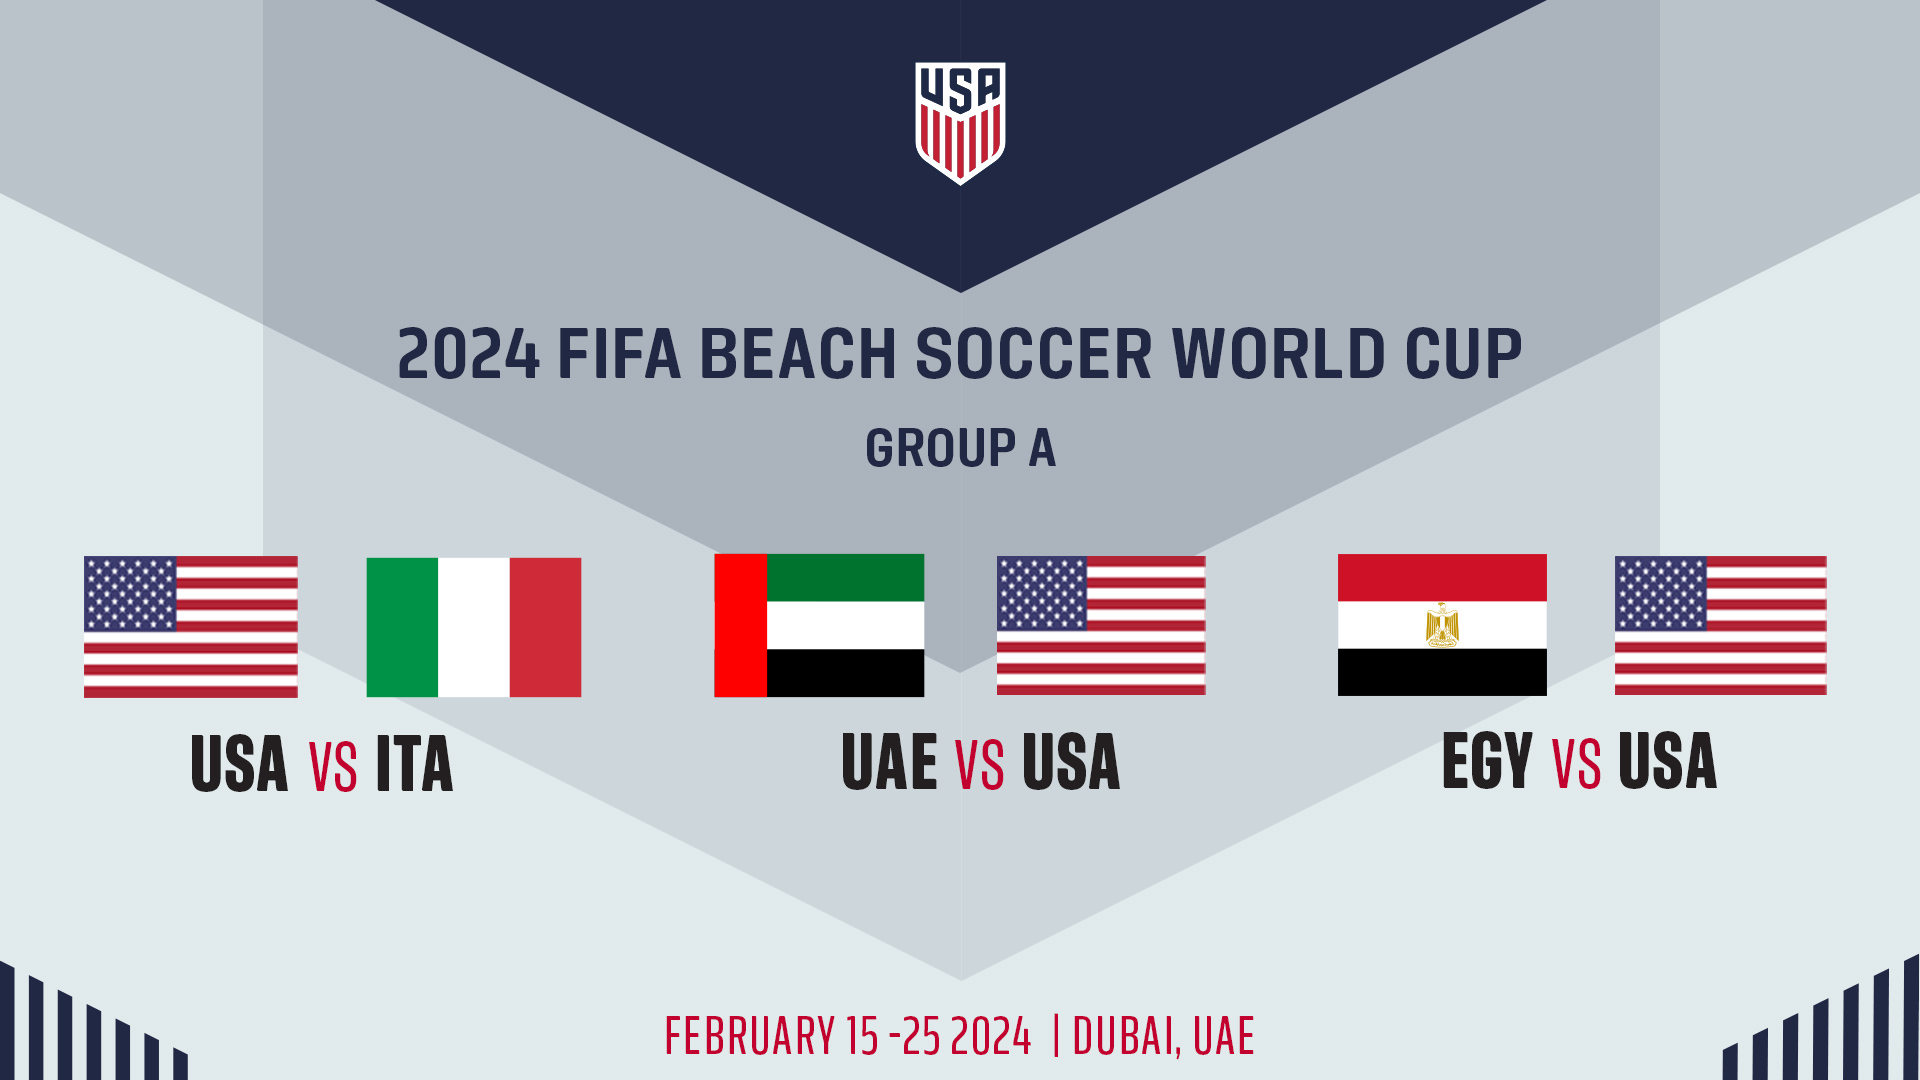 La nazionale maschile di beach Soccer degli Stati Uniti affronterà Italia, Emirati Arabi Uniti ed Egitto ai Mondiali FIFA Beach Soccer 2024 negli Emirati Arabi Uniti.